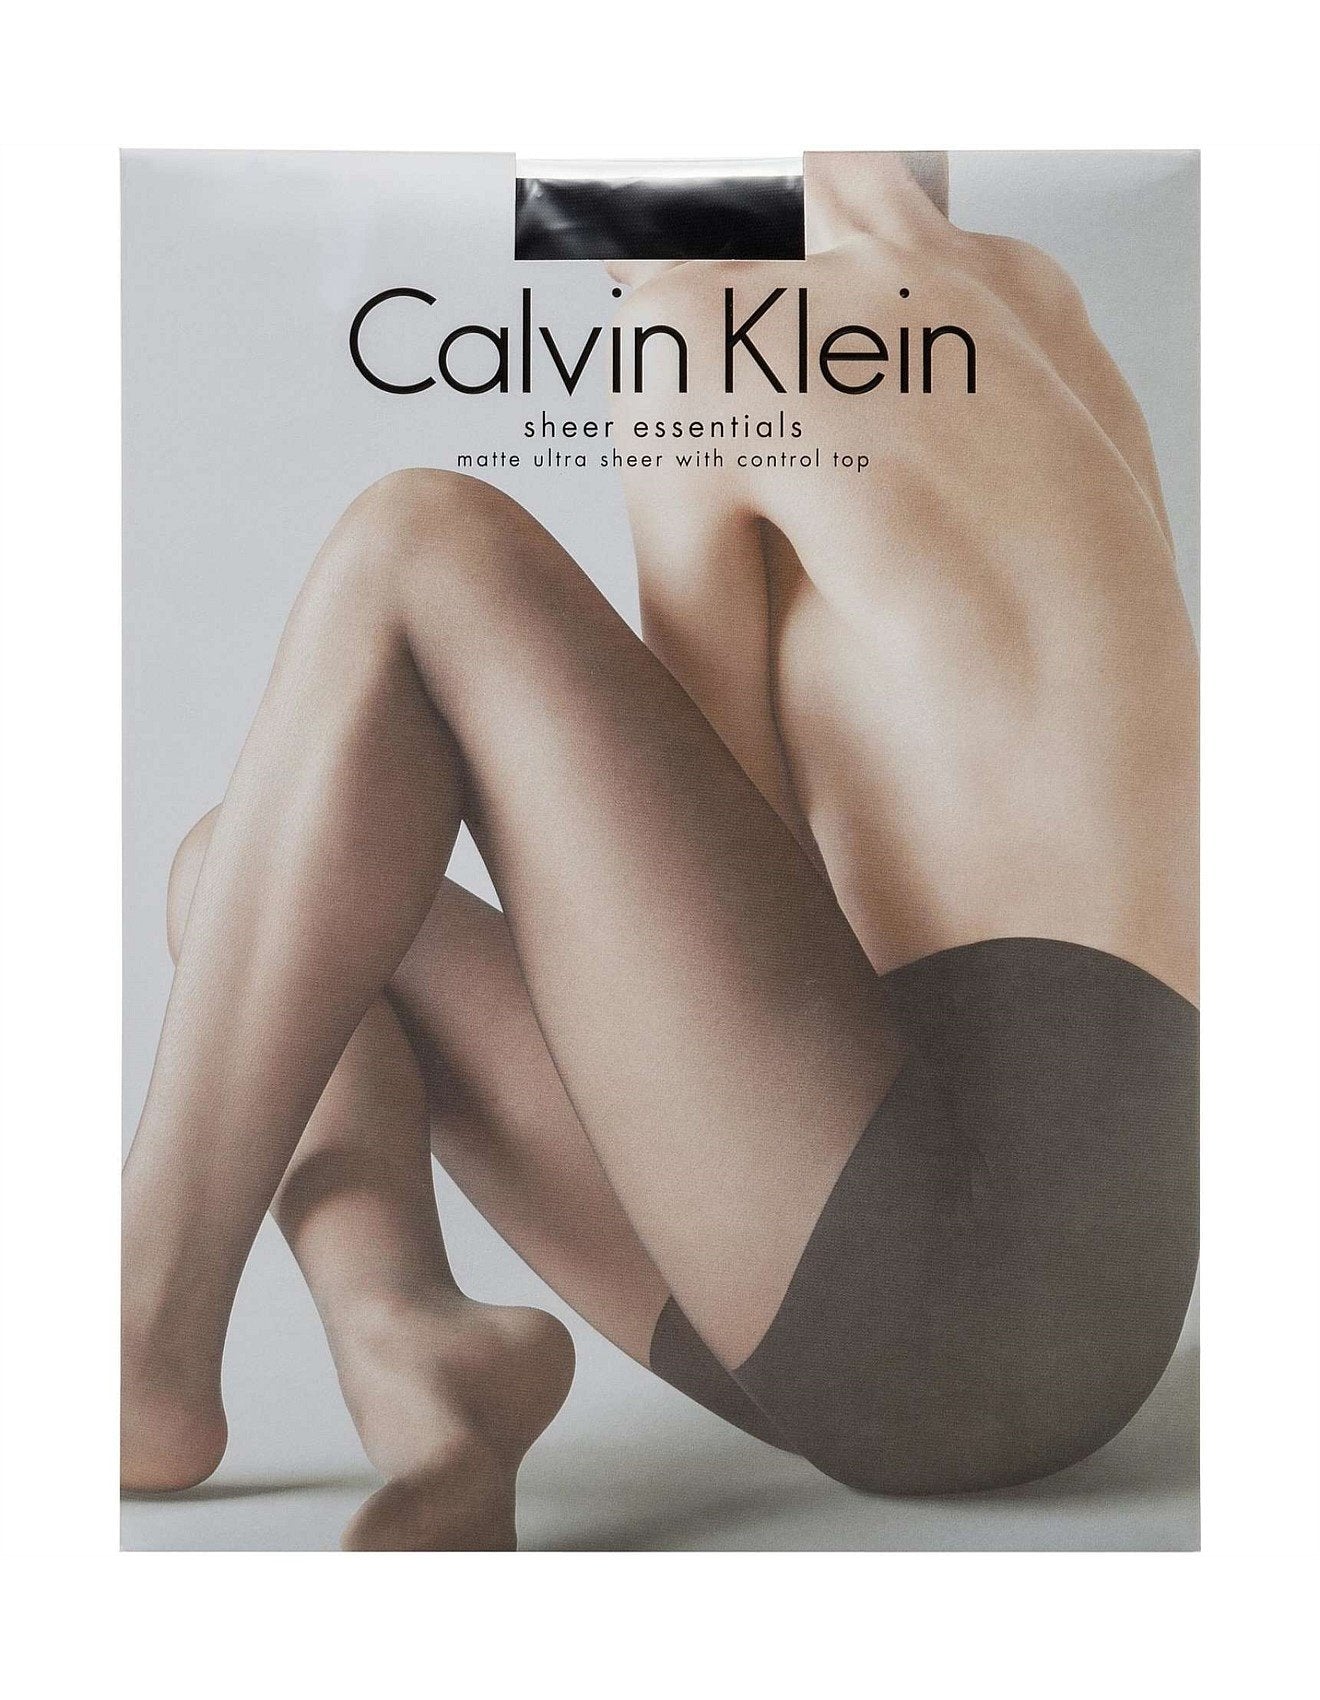 Calvin Klein Ultra Sheer Control Top Pantyhose